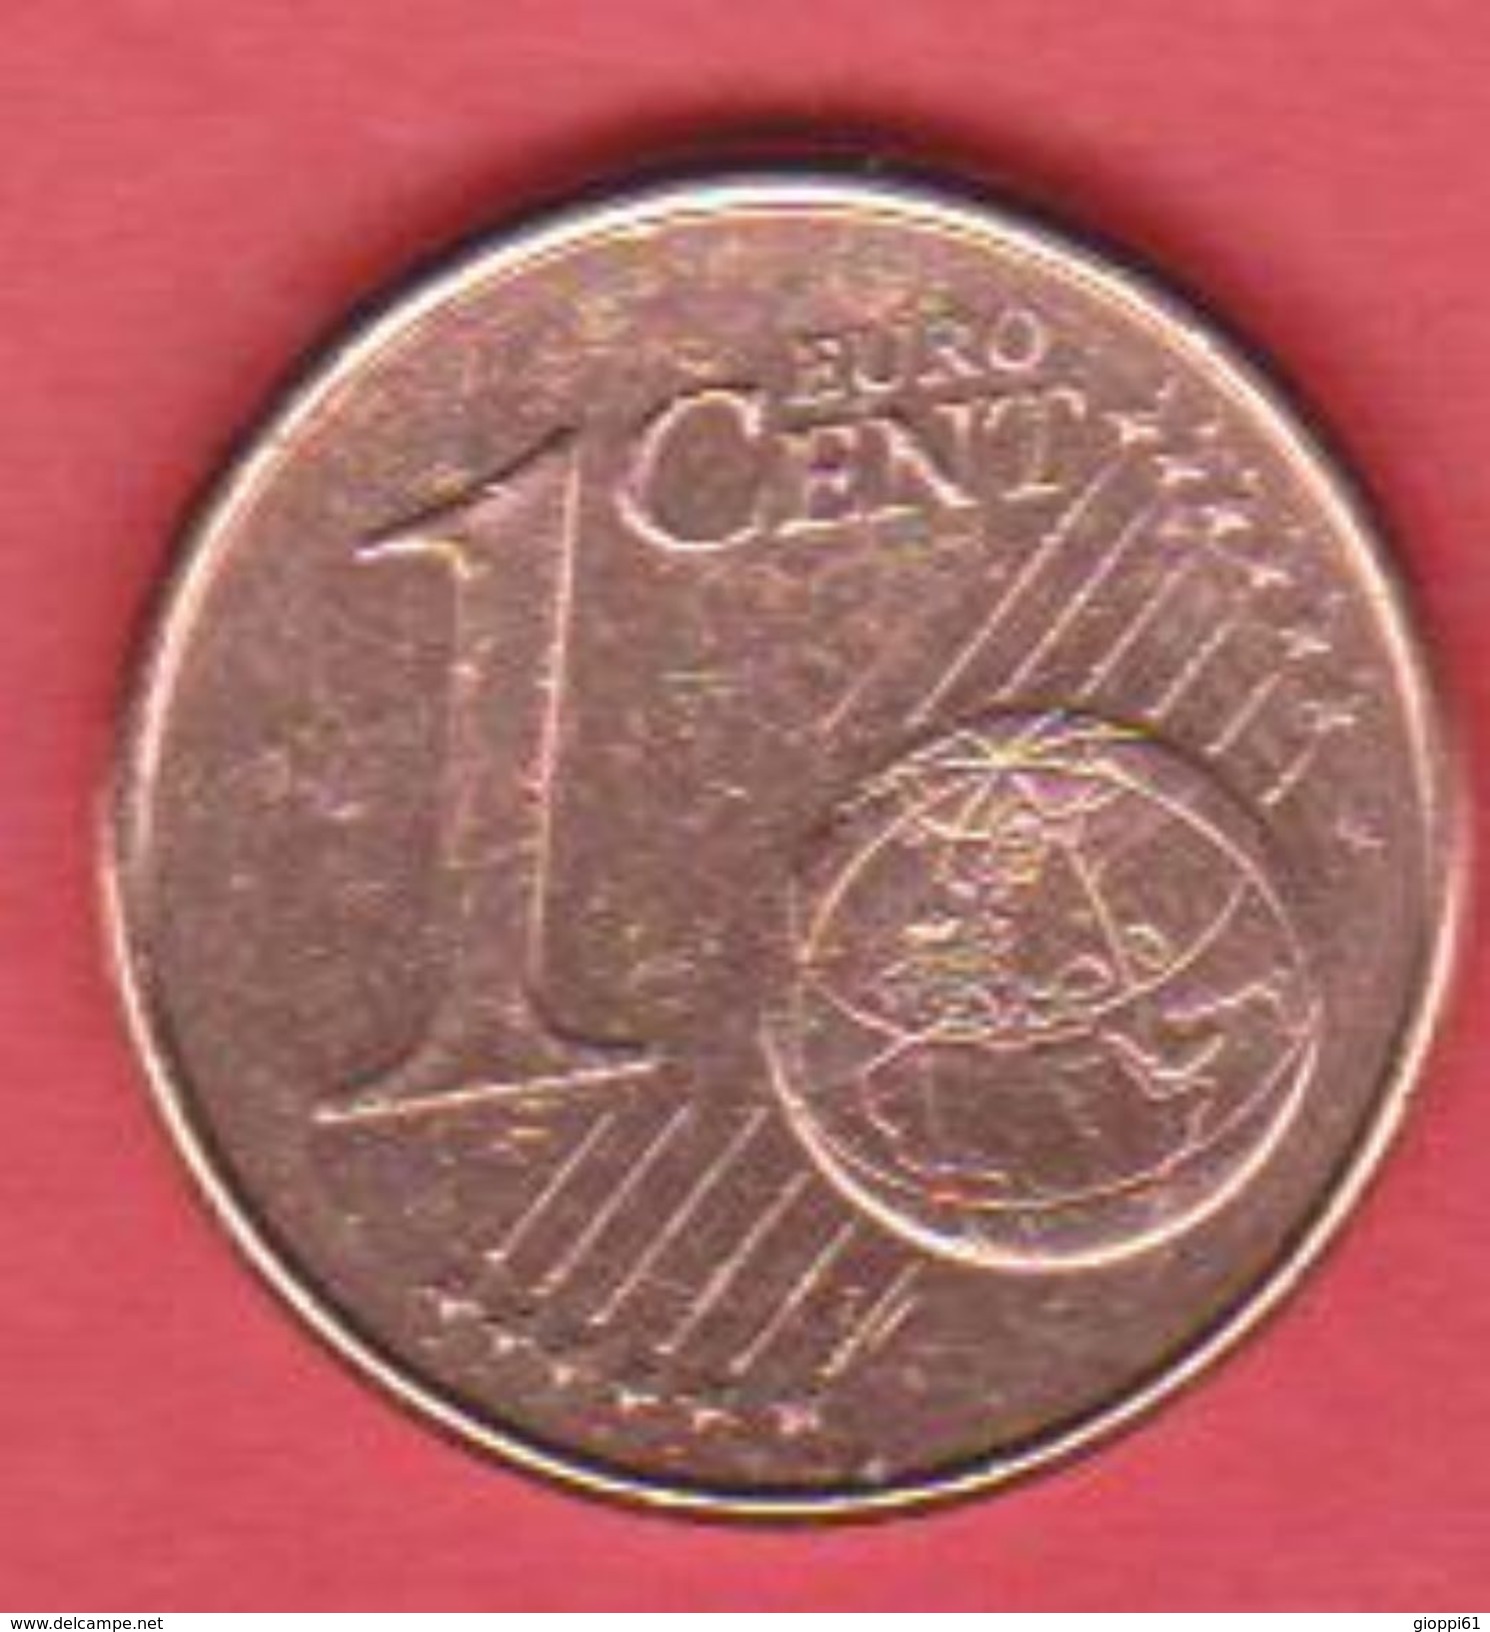 2009 Spagna 1c (circolata) - Spagna